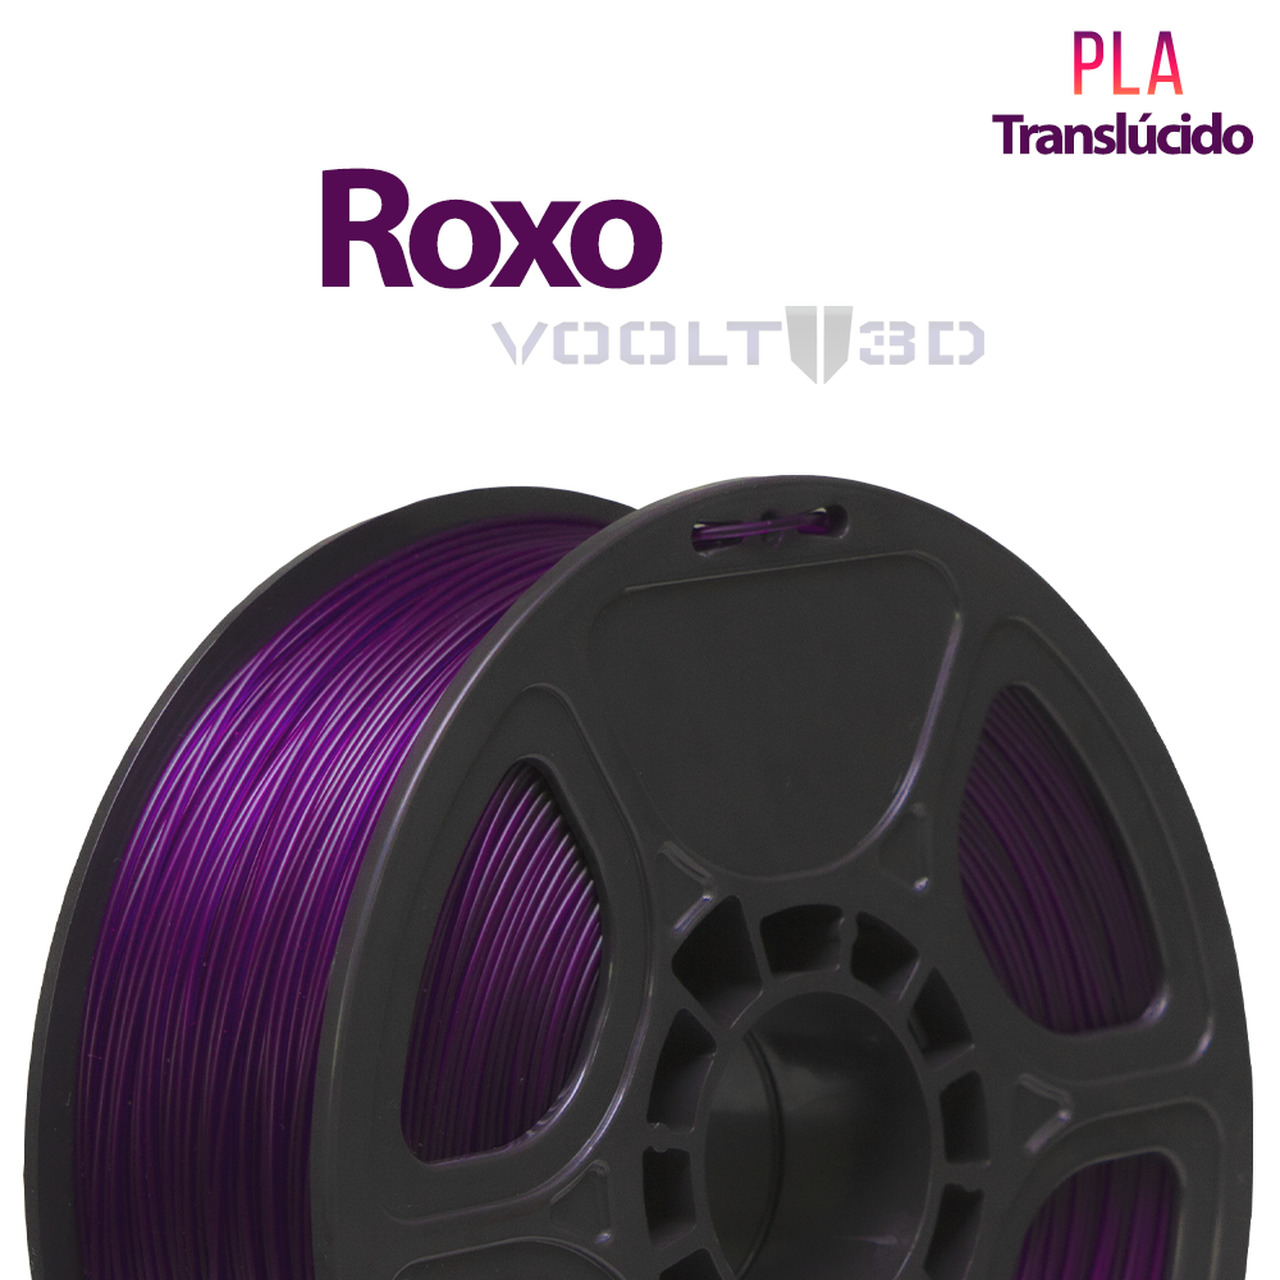 Filamento PLA - Roxo - Voolt 3D - 1.75mm - 1kg